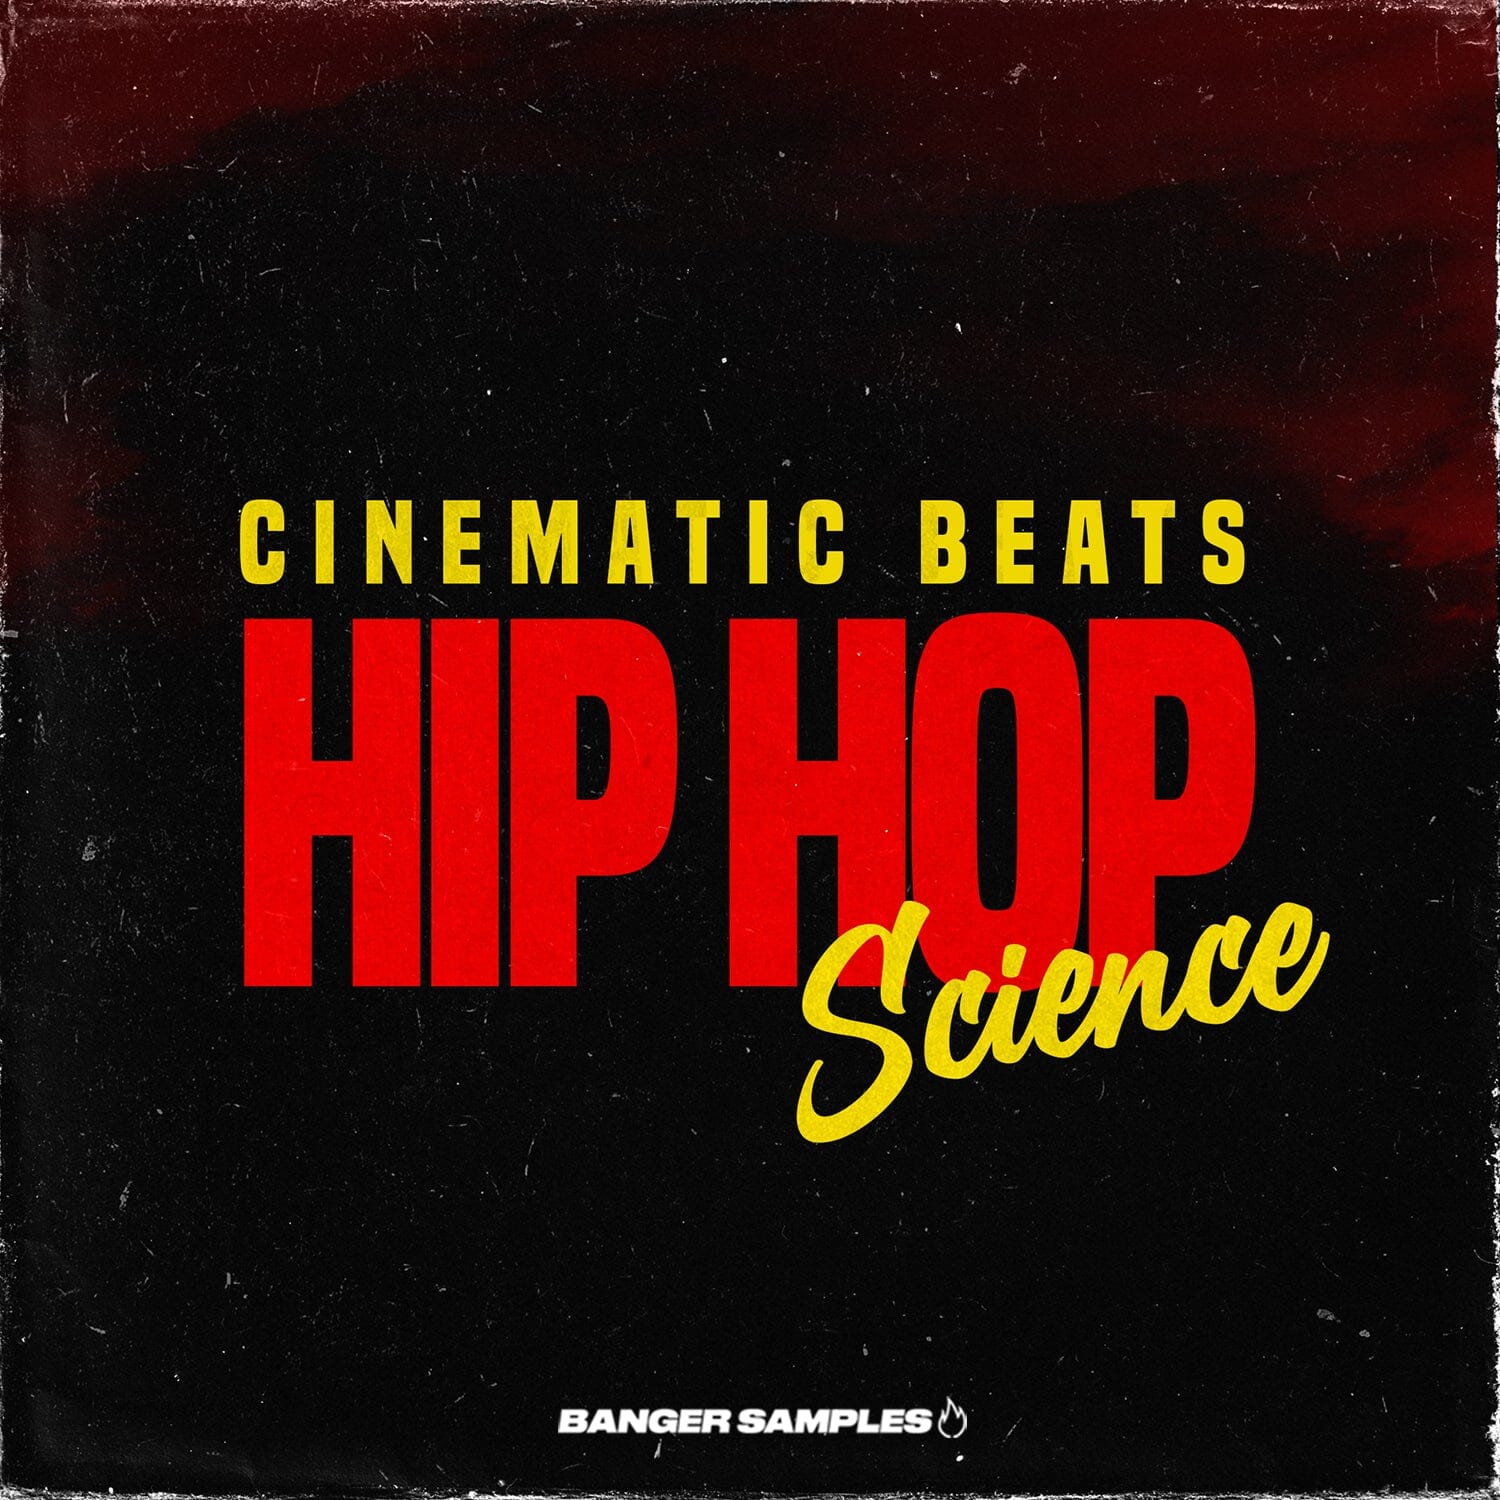 Hip Hop Science - 808 Bass - Music Loops - Drum Loops Sample Pack Banger Samples